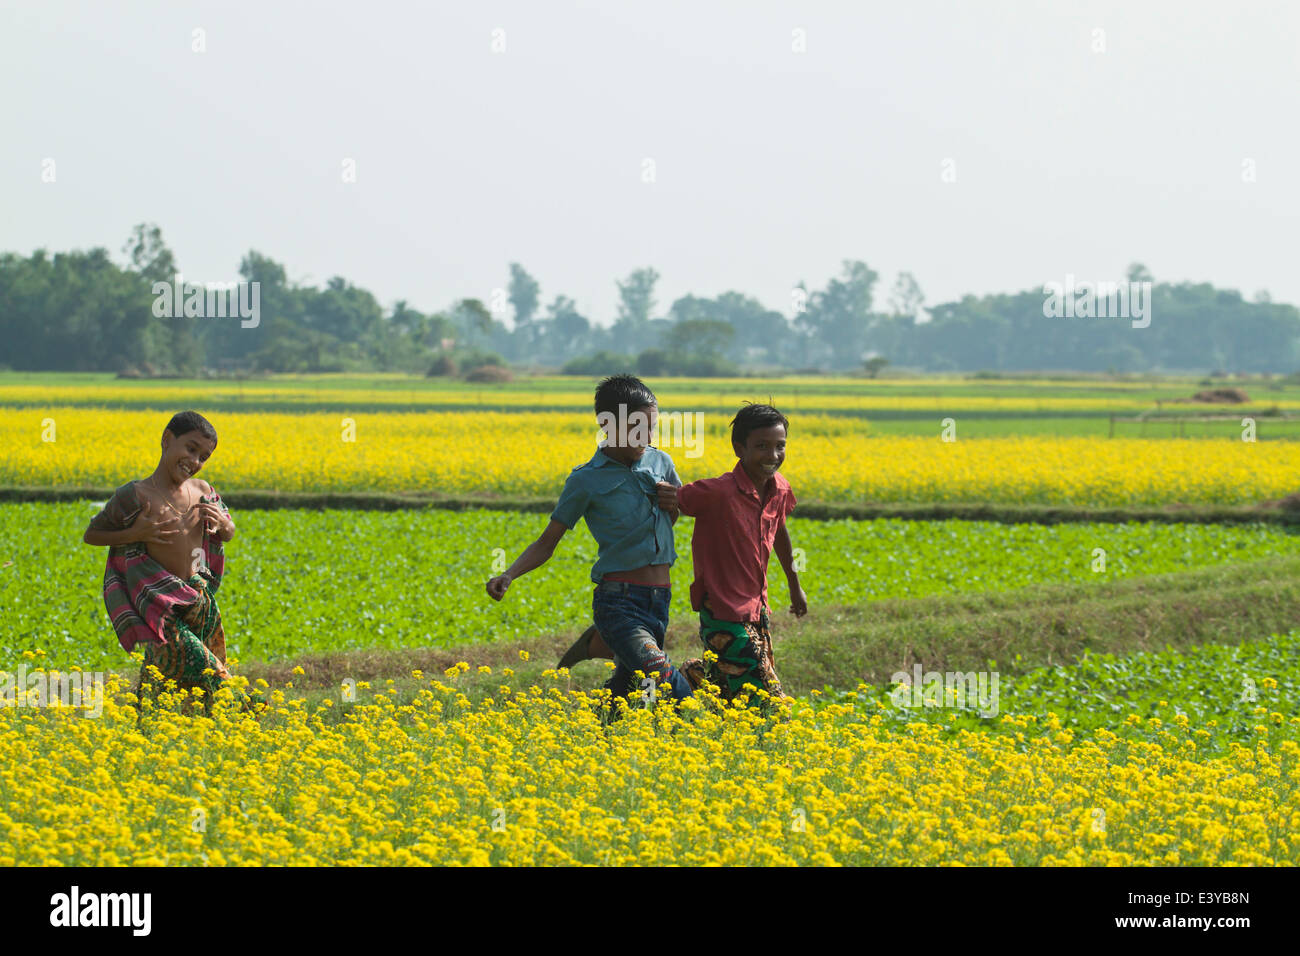 Campo di senape in Bangladesh la senape è un tempo fresco e raccolto è cresciuto da semi seminati in primavera. Da metà dicembre fino alla fine di gennaio, Bangladesh gli agricoltori coltivano i loro raccolti di vivacemente colorato di giallo senape fiori che sono in piena fioritura. Foto Stock